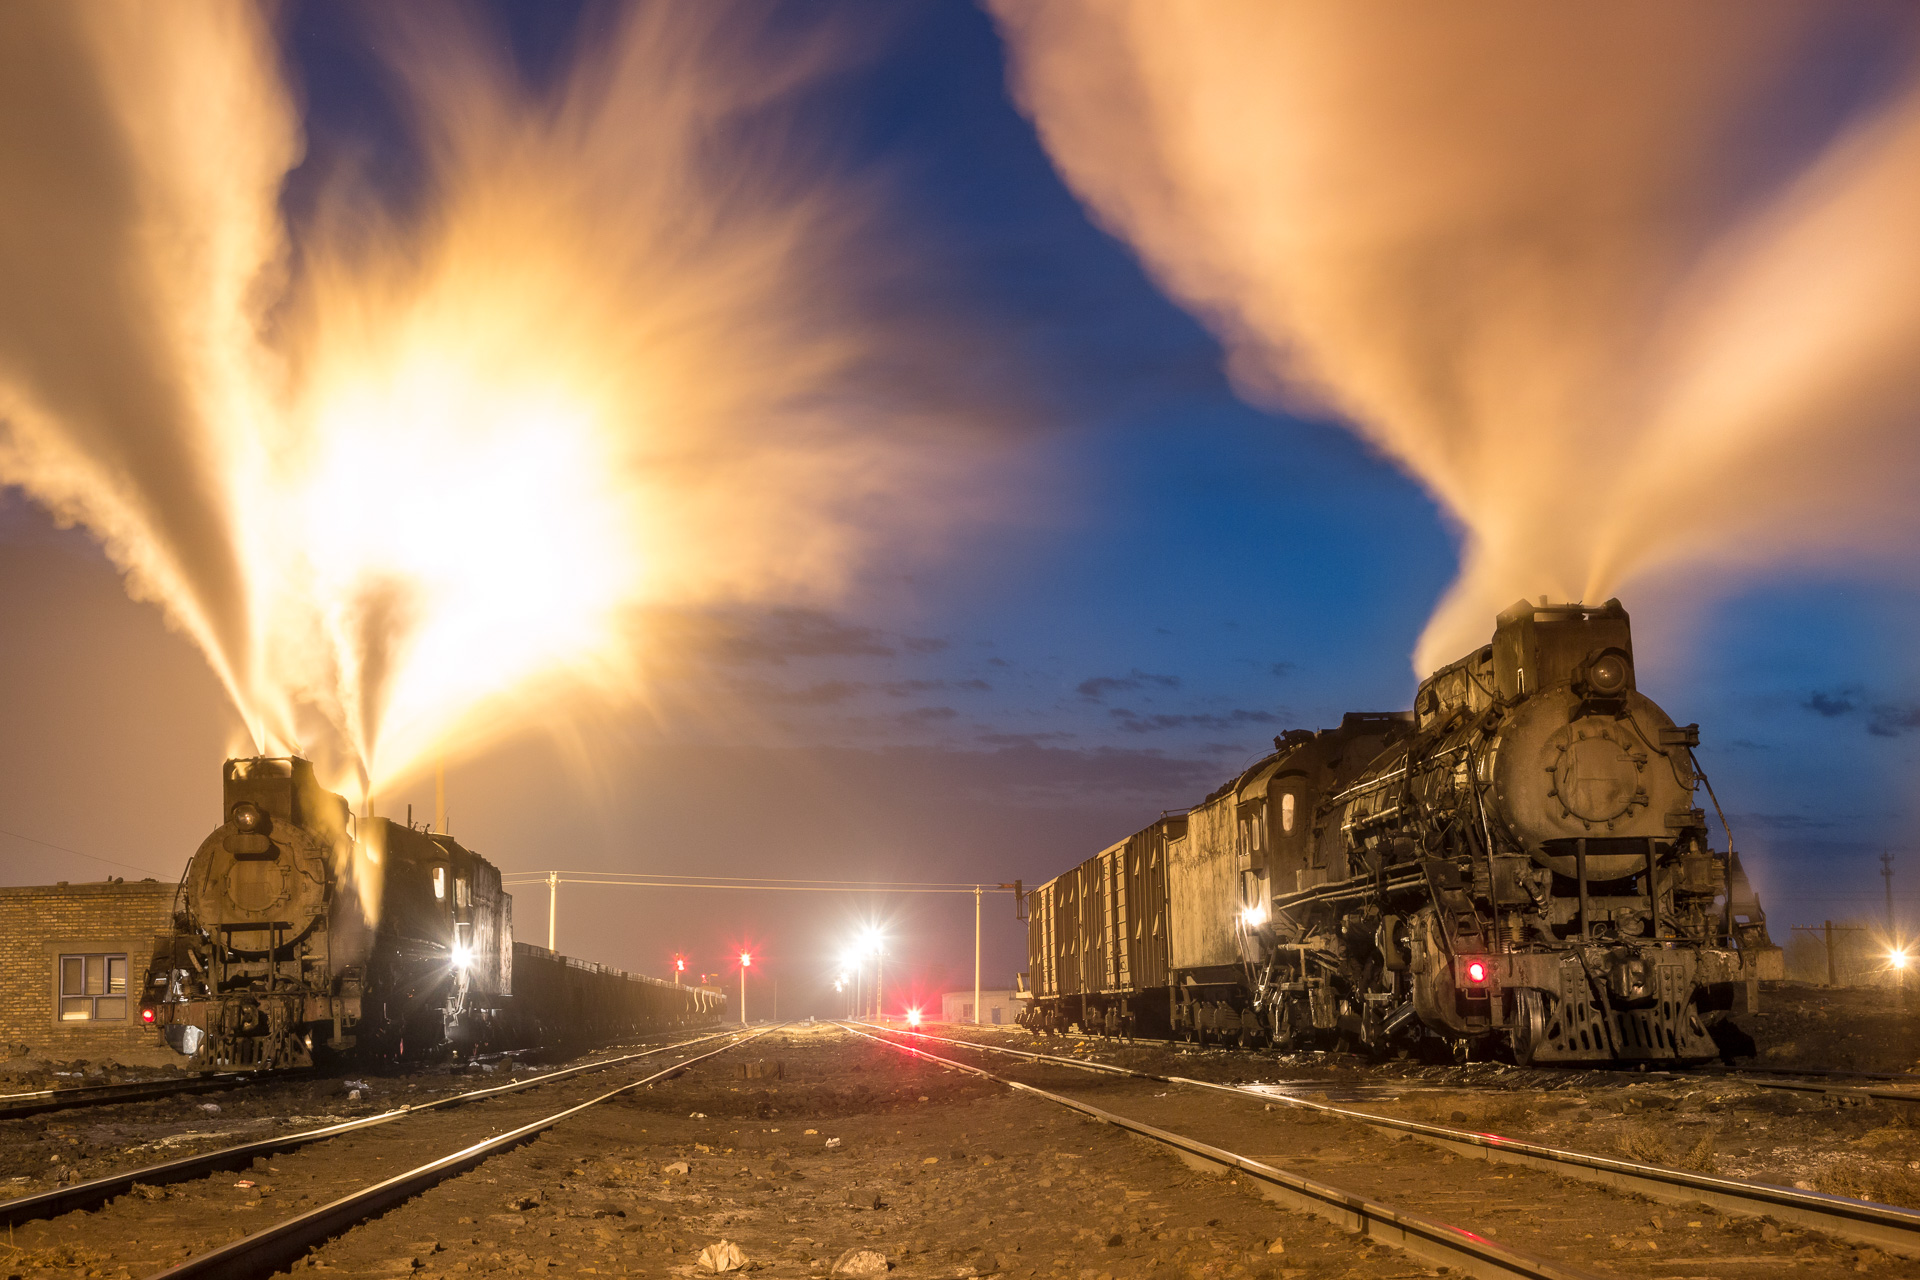  Vor Sonnenaufgang treffen sich zwei Lokomotiven der  JS  Klasse in Dongbolizhan, Provinz Xinjiang. Die Dezemberkälte von minus 20 Grad lässt die Dampfwolken weit in den Himmel steigen. 